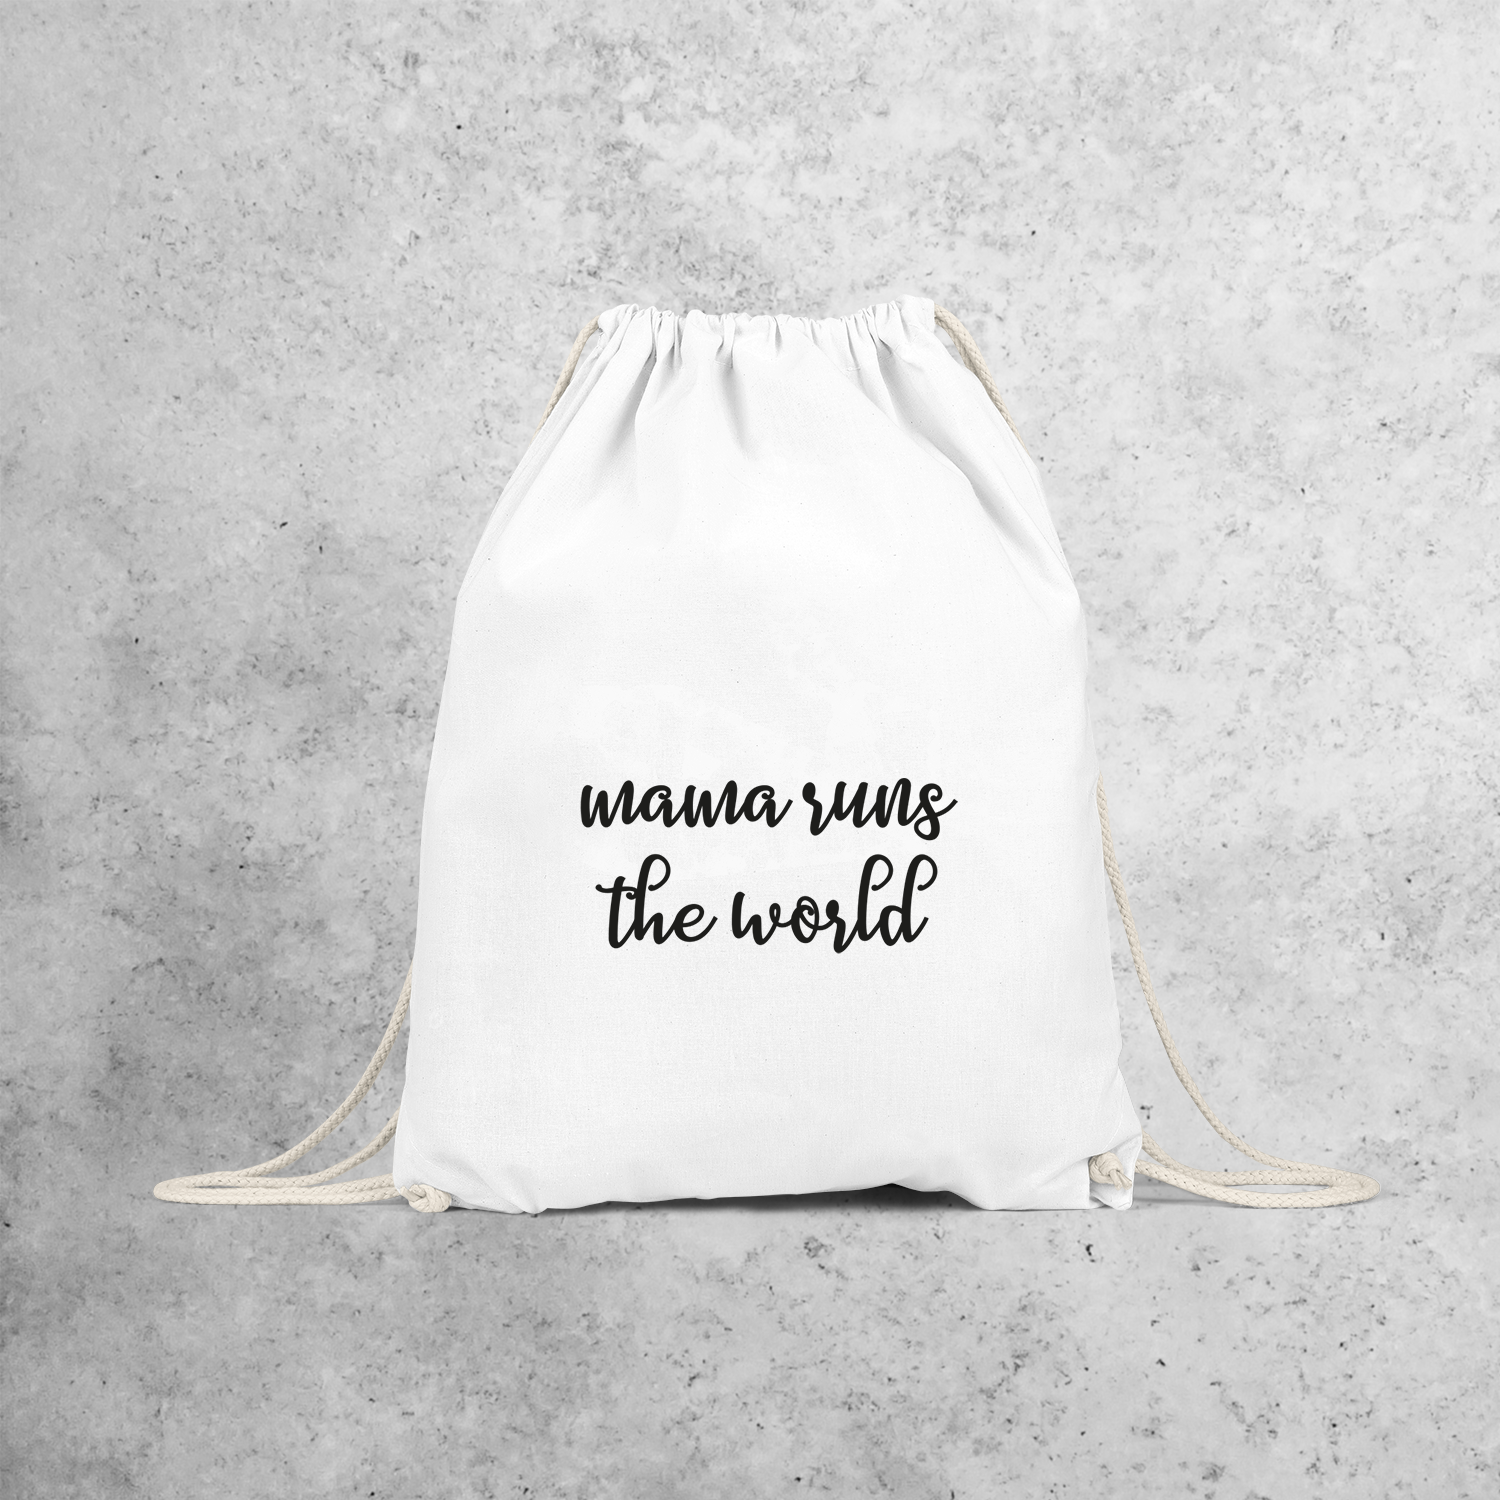 'Mama runs the world' backpack